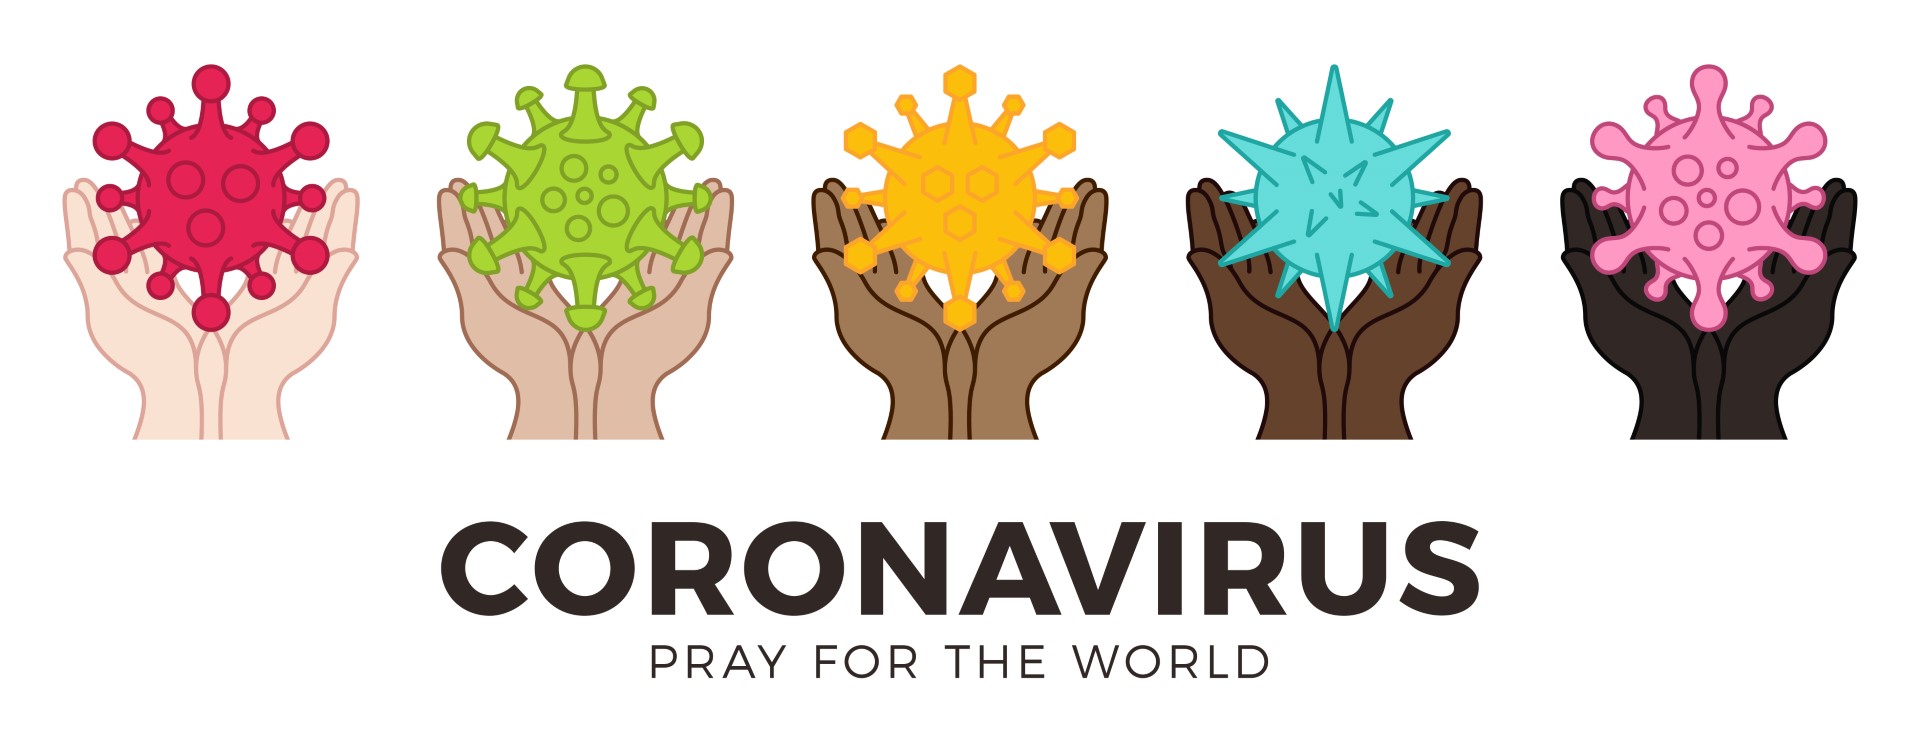 Pray for the World coronavirus image